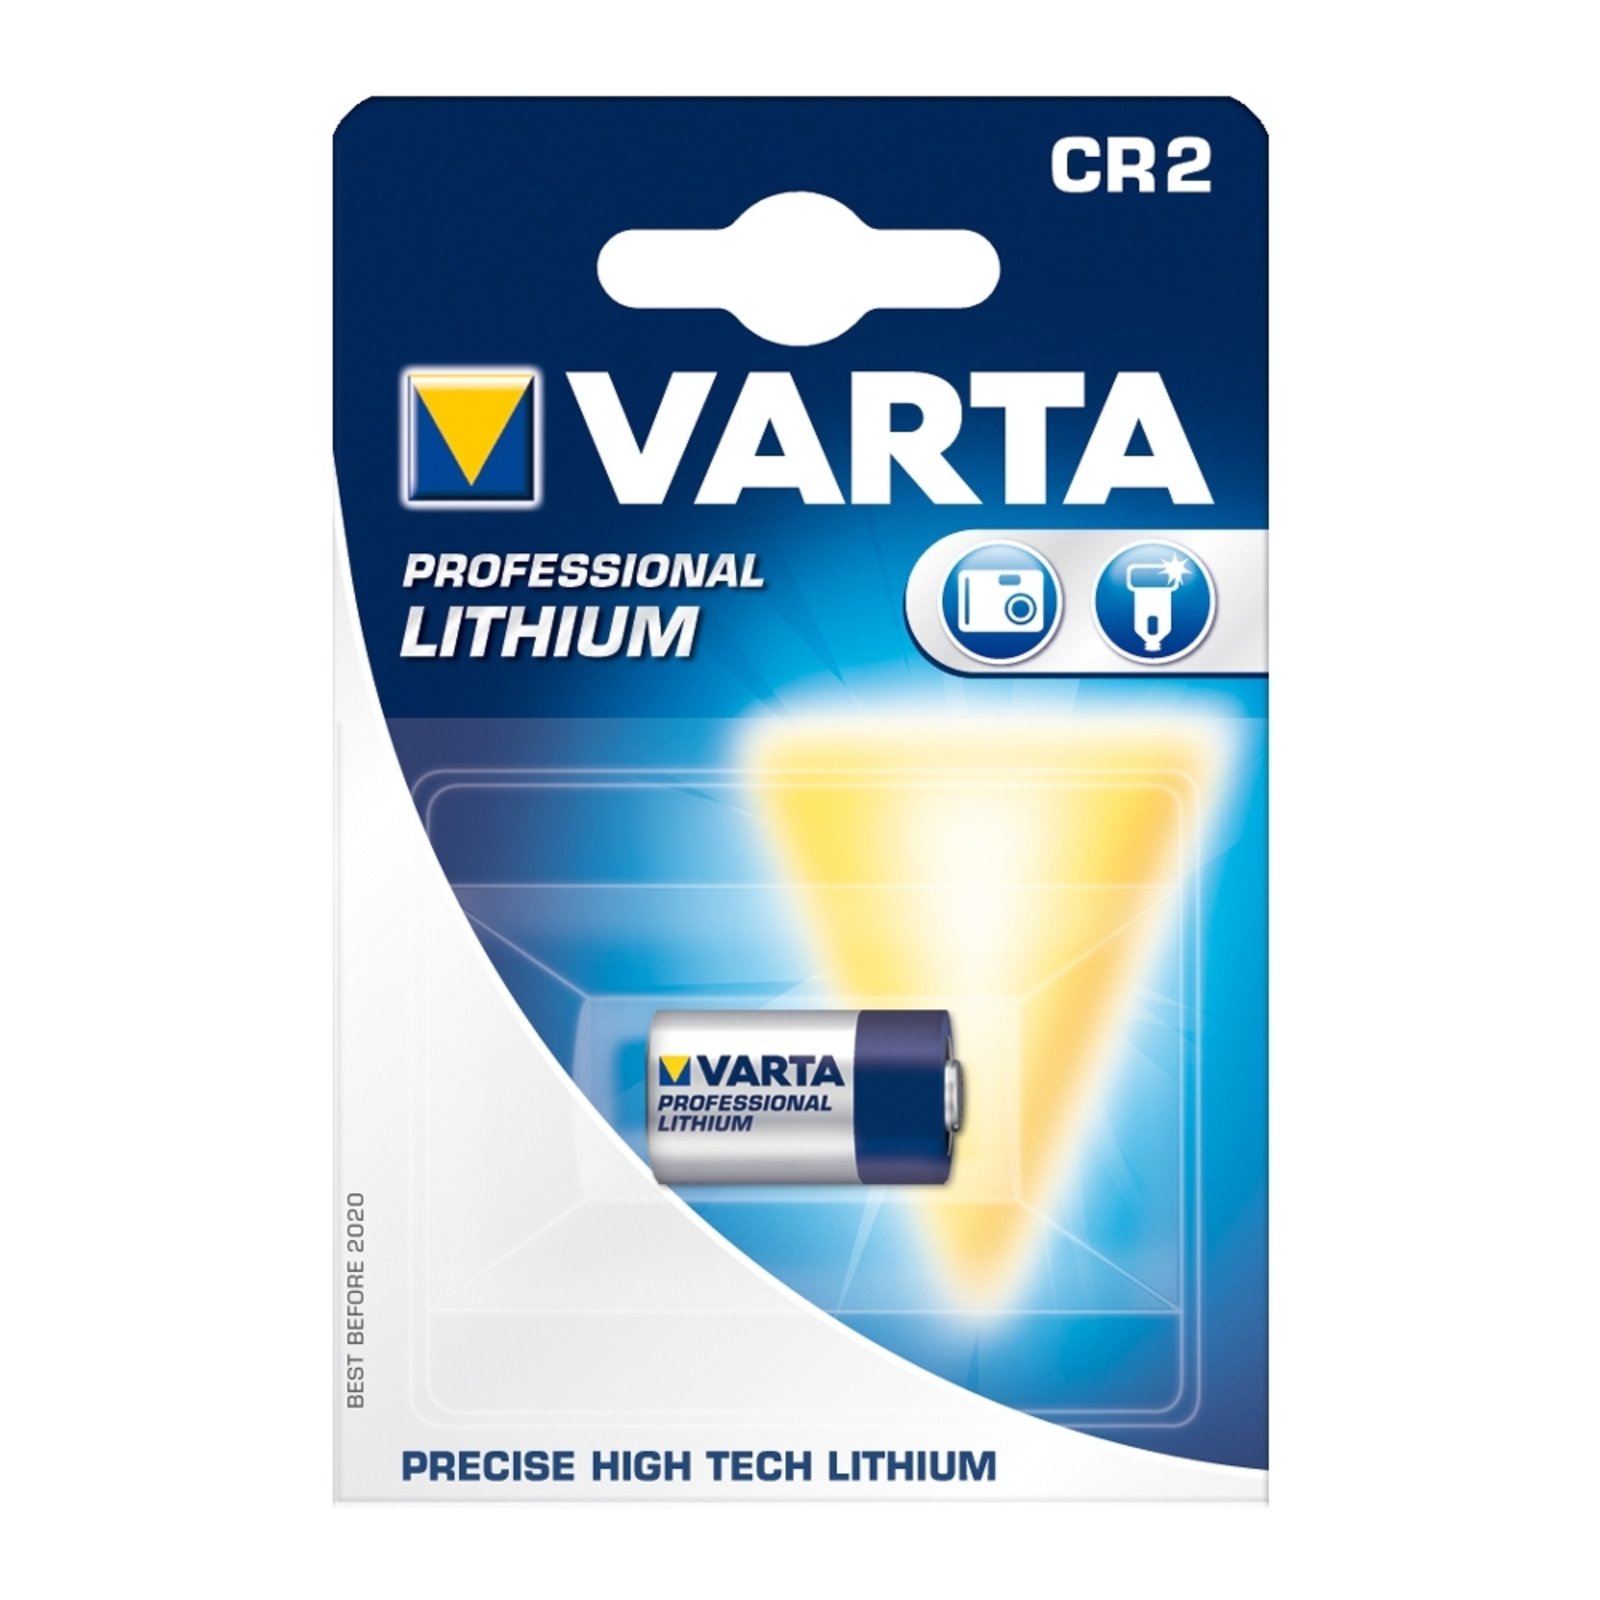 Litiumparisto CR2 (6206) 3 V VARTA